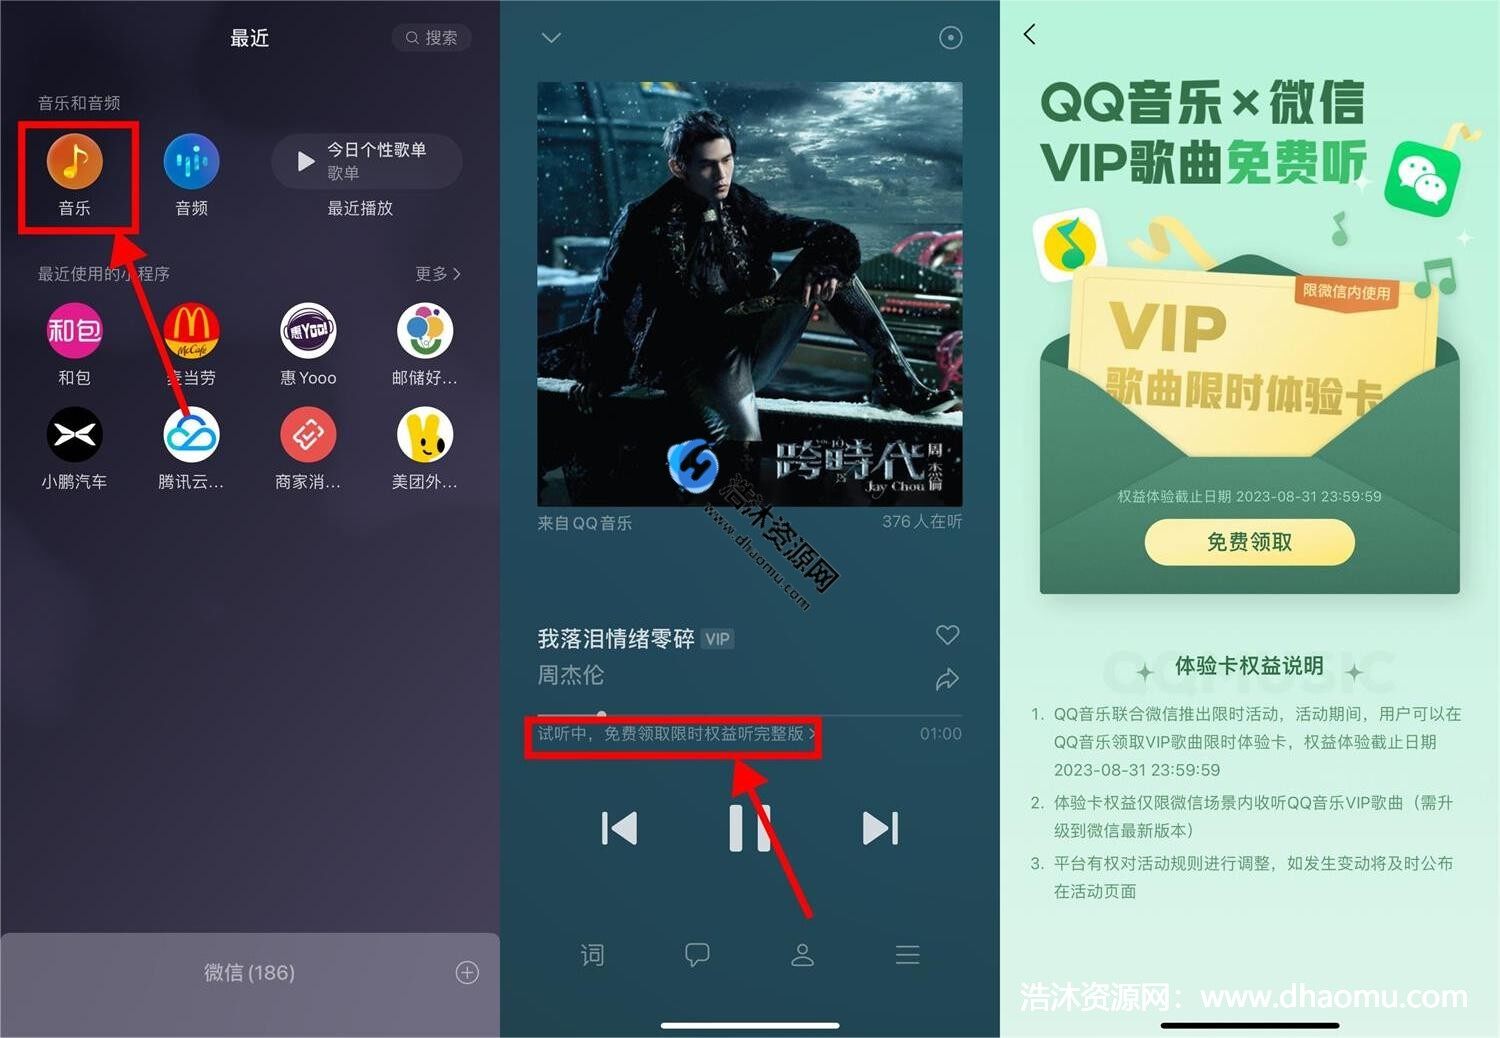 微信免费领取QQ音乐VIP体验卡2个月